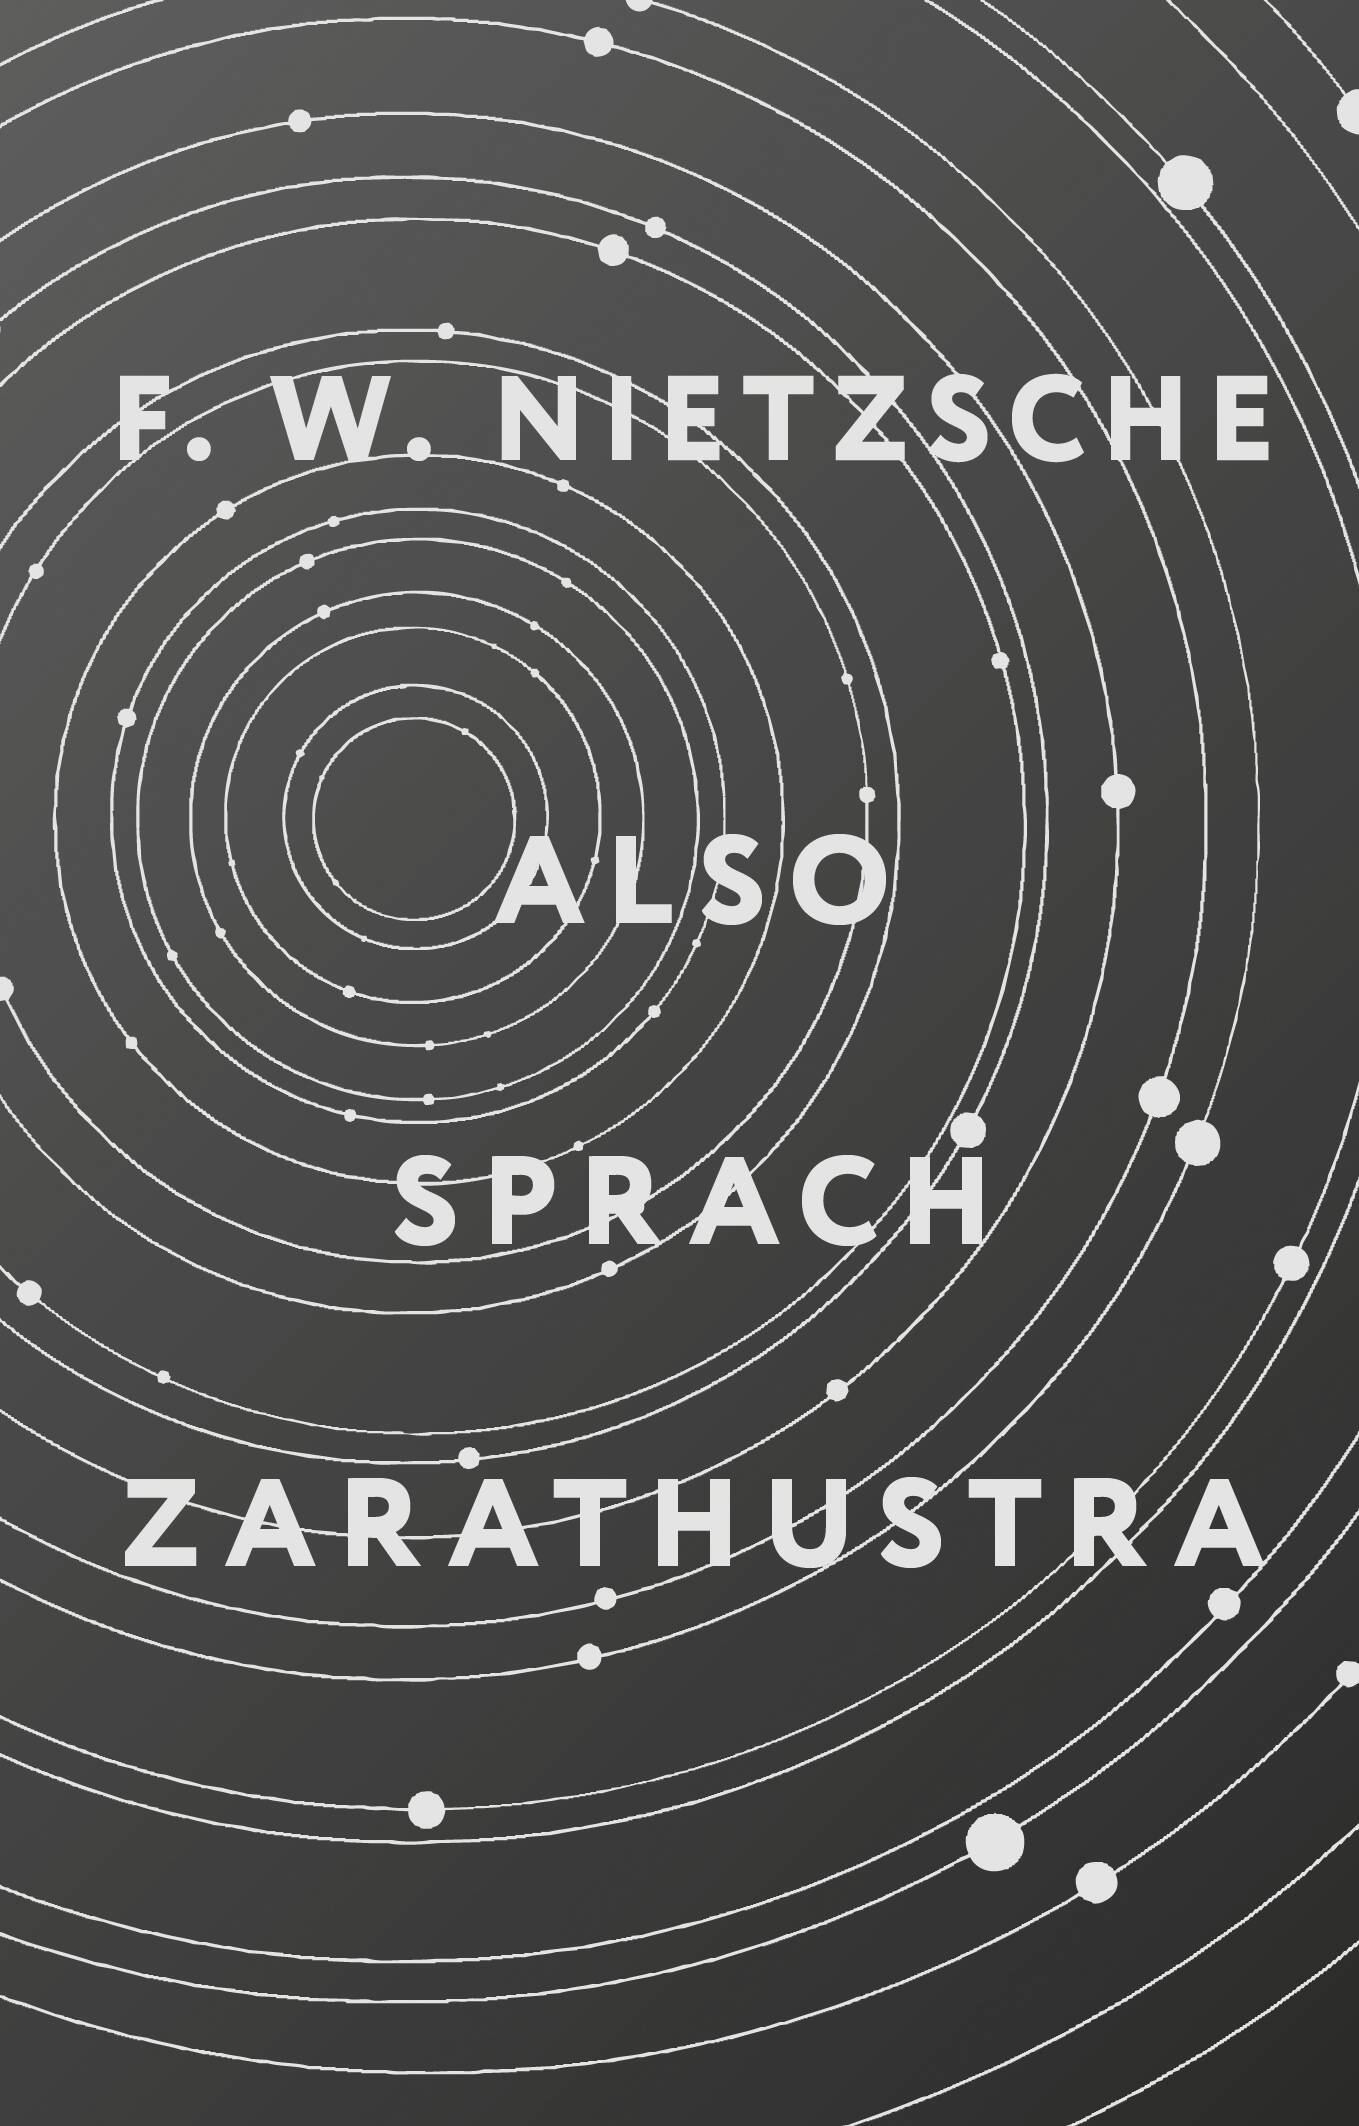 Ницше Фридрих Вильгельм Also sprach Zarathustra also sprach zarathustra nietzsche f